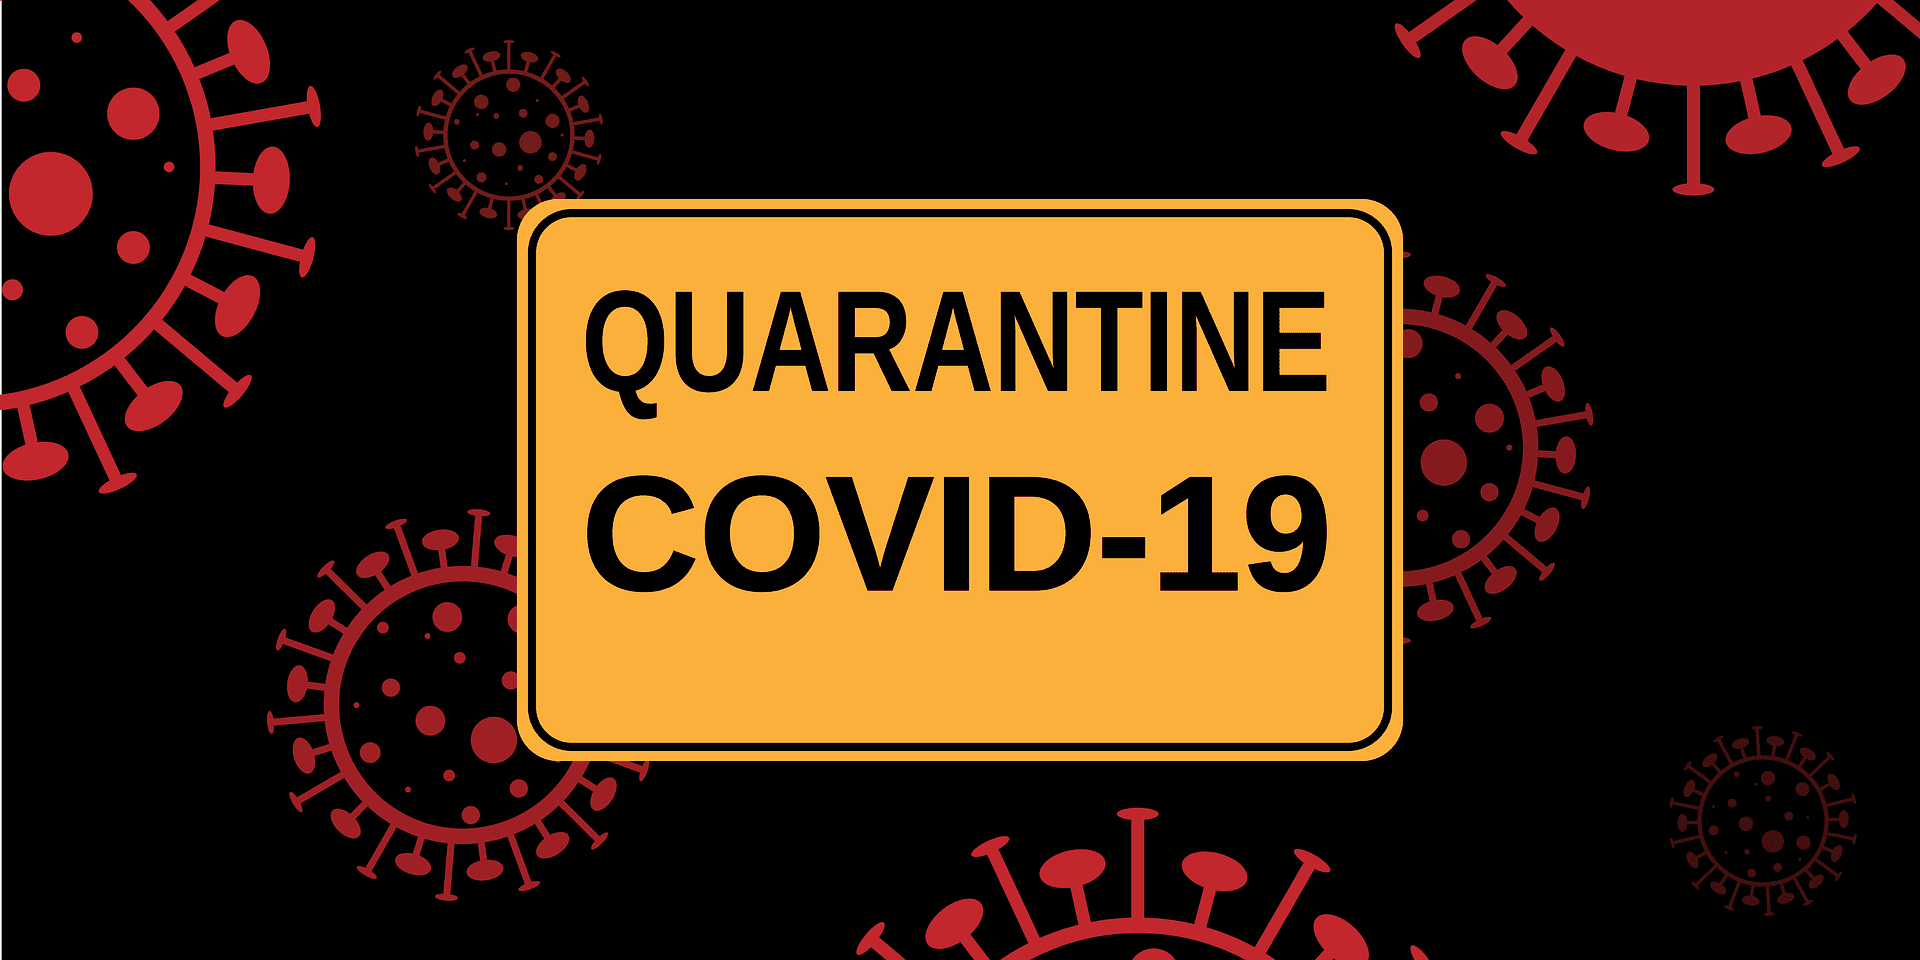 COVID-19 quarantine image uploaded in 2020 | Photo: Pixabay/Alexey Hulsov 